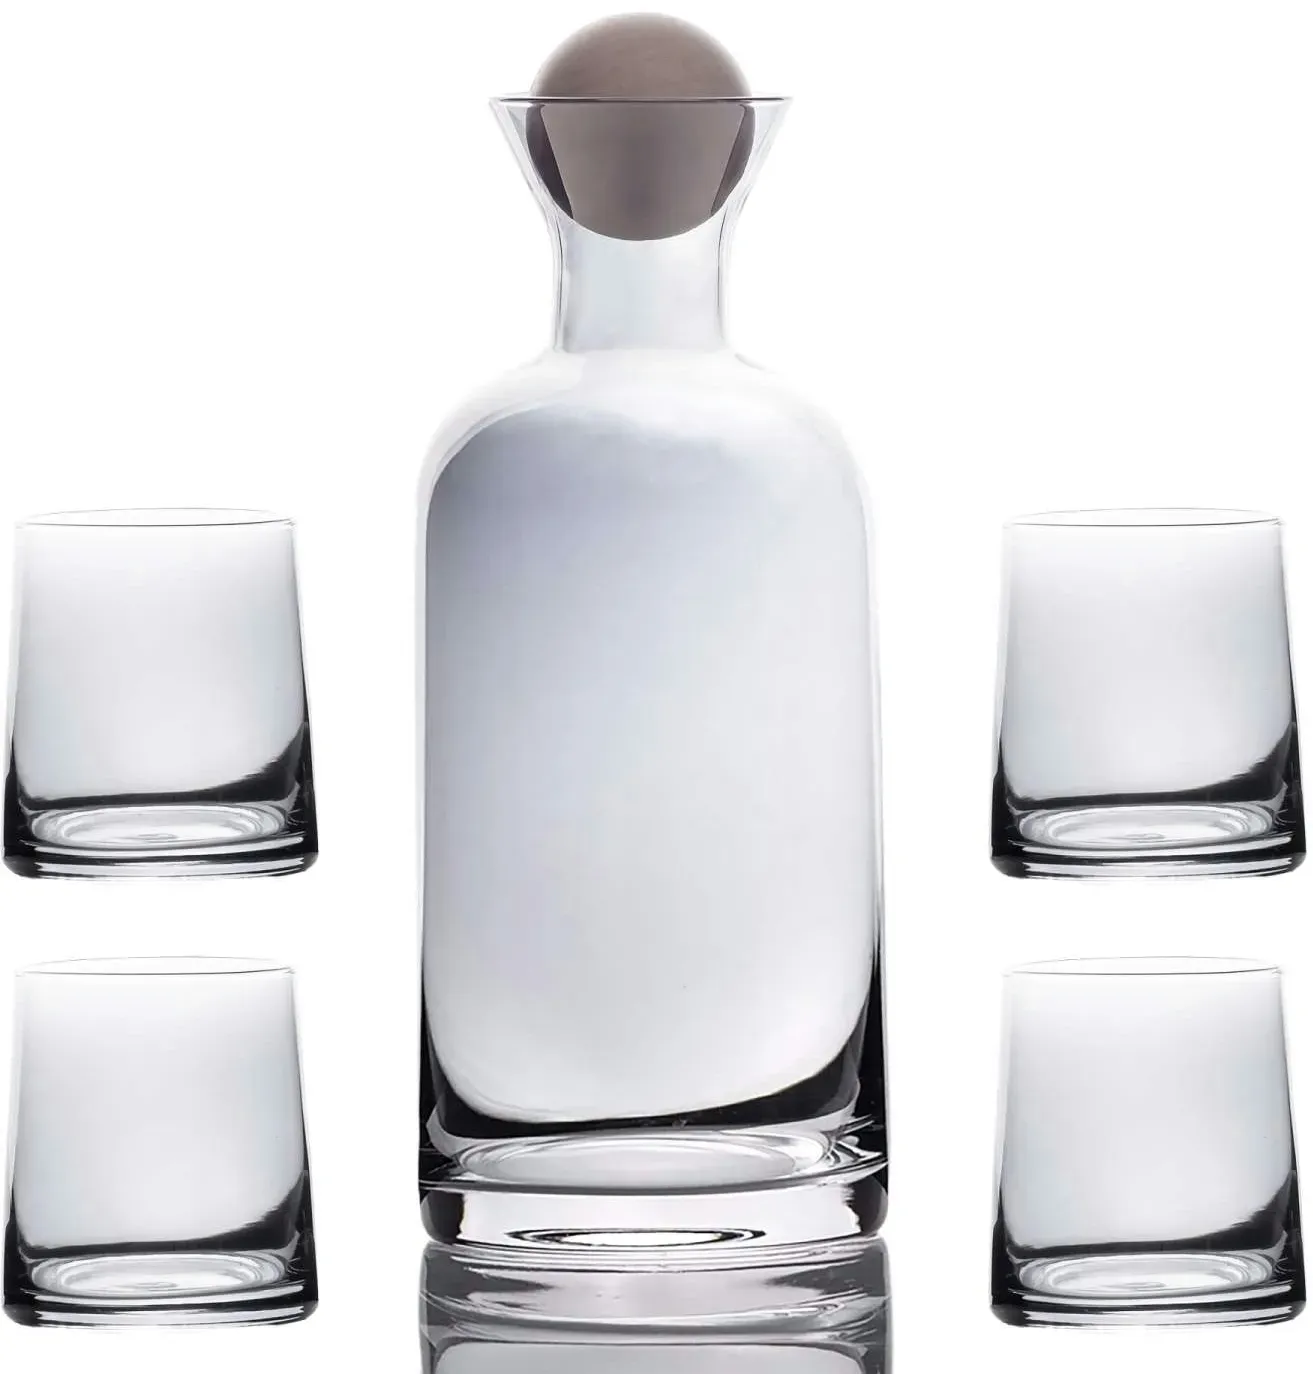 Intirilife Karaffe mit 4 Gläsern Set aus Glas mit Smoky Grau - Karaffe 1.1 Liter - Gläser 200 ml - Geschenk Set Kanne Krug mit Balldeckel